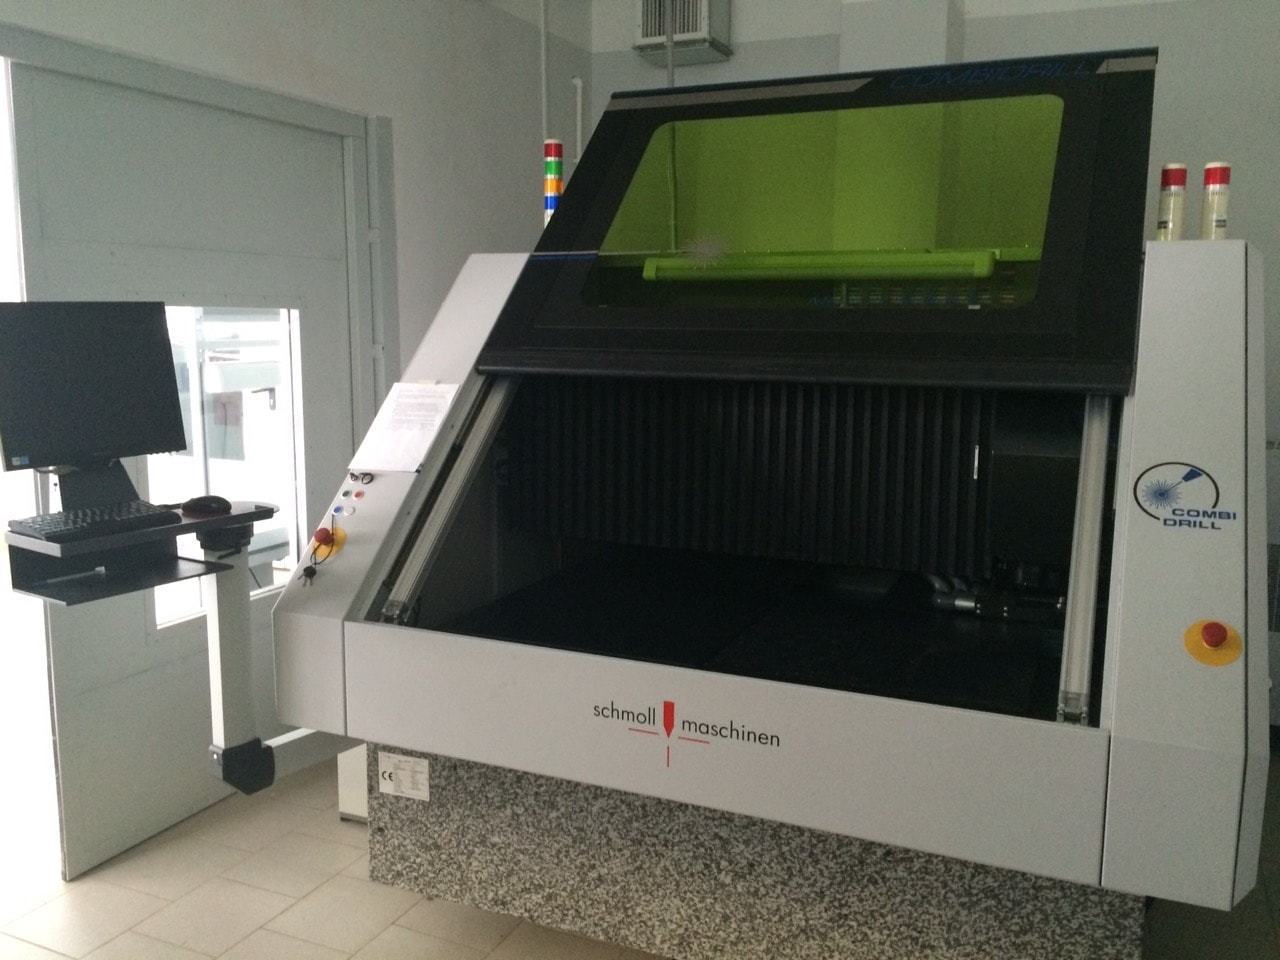 Гибридный лазерный станок для обработки печатных плат Combi Drill с ЧПУ UV/CO2 ф. Scmoll Maschinen GmbH (Германия).